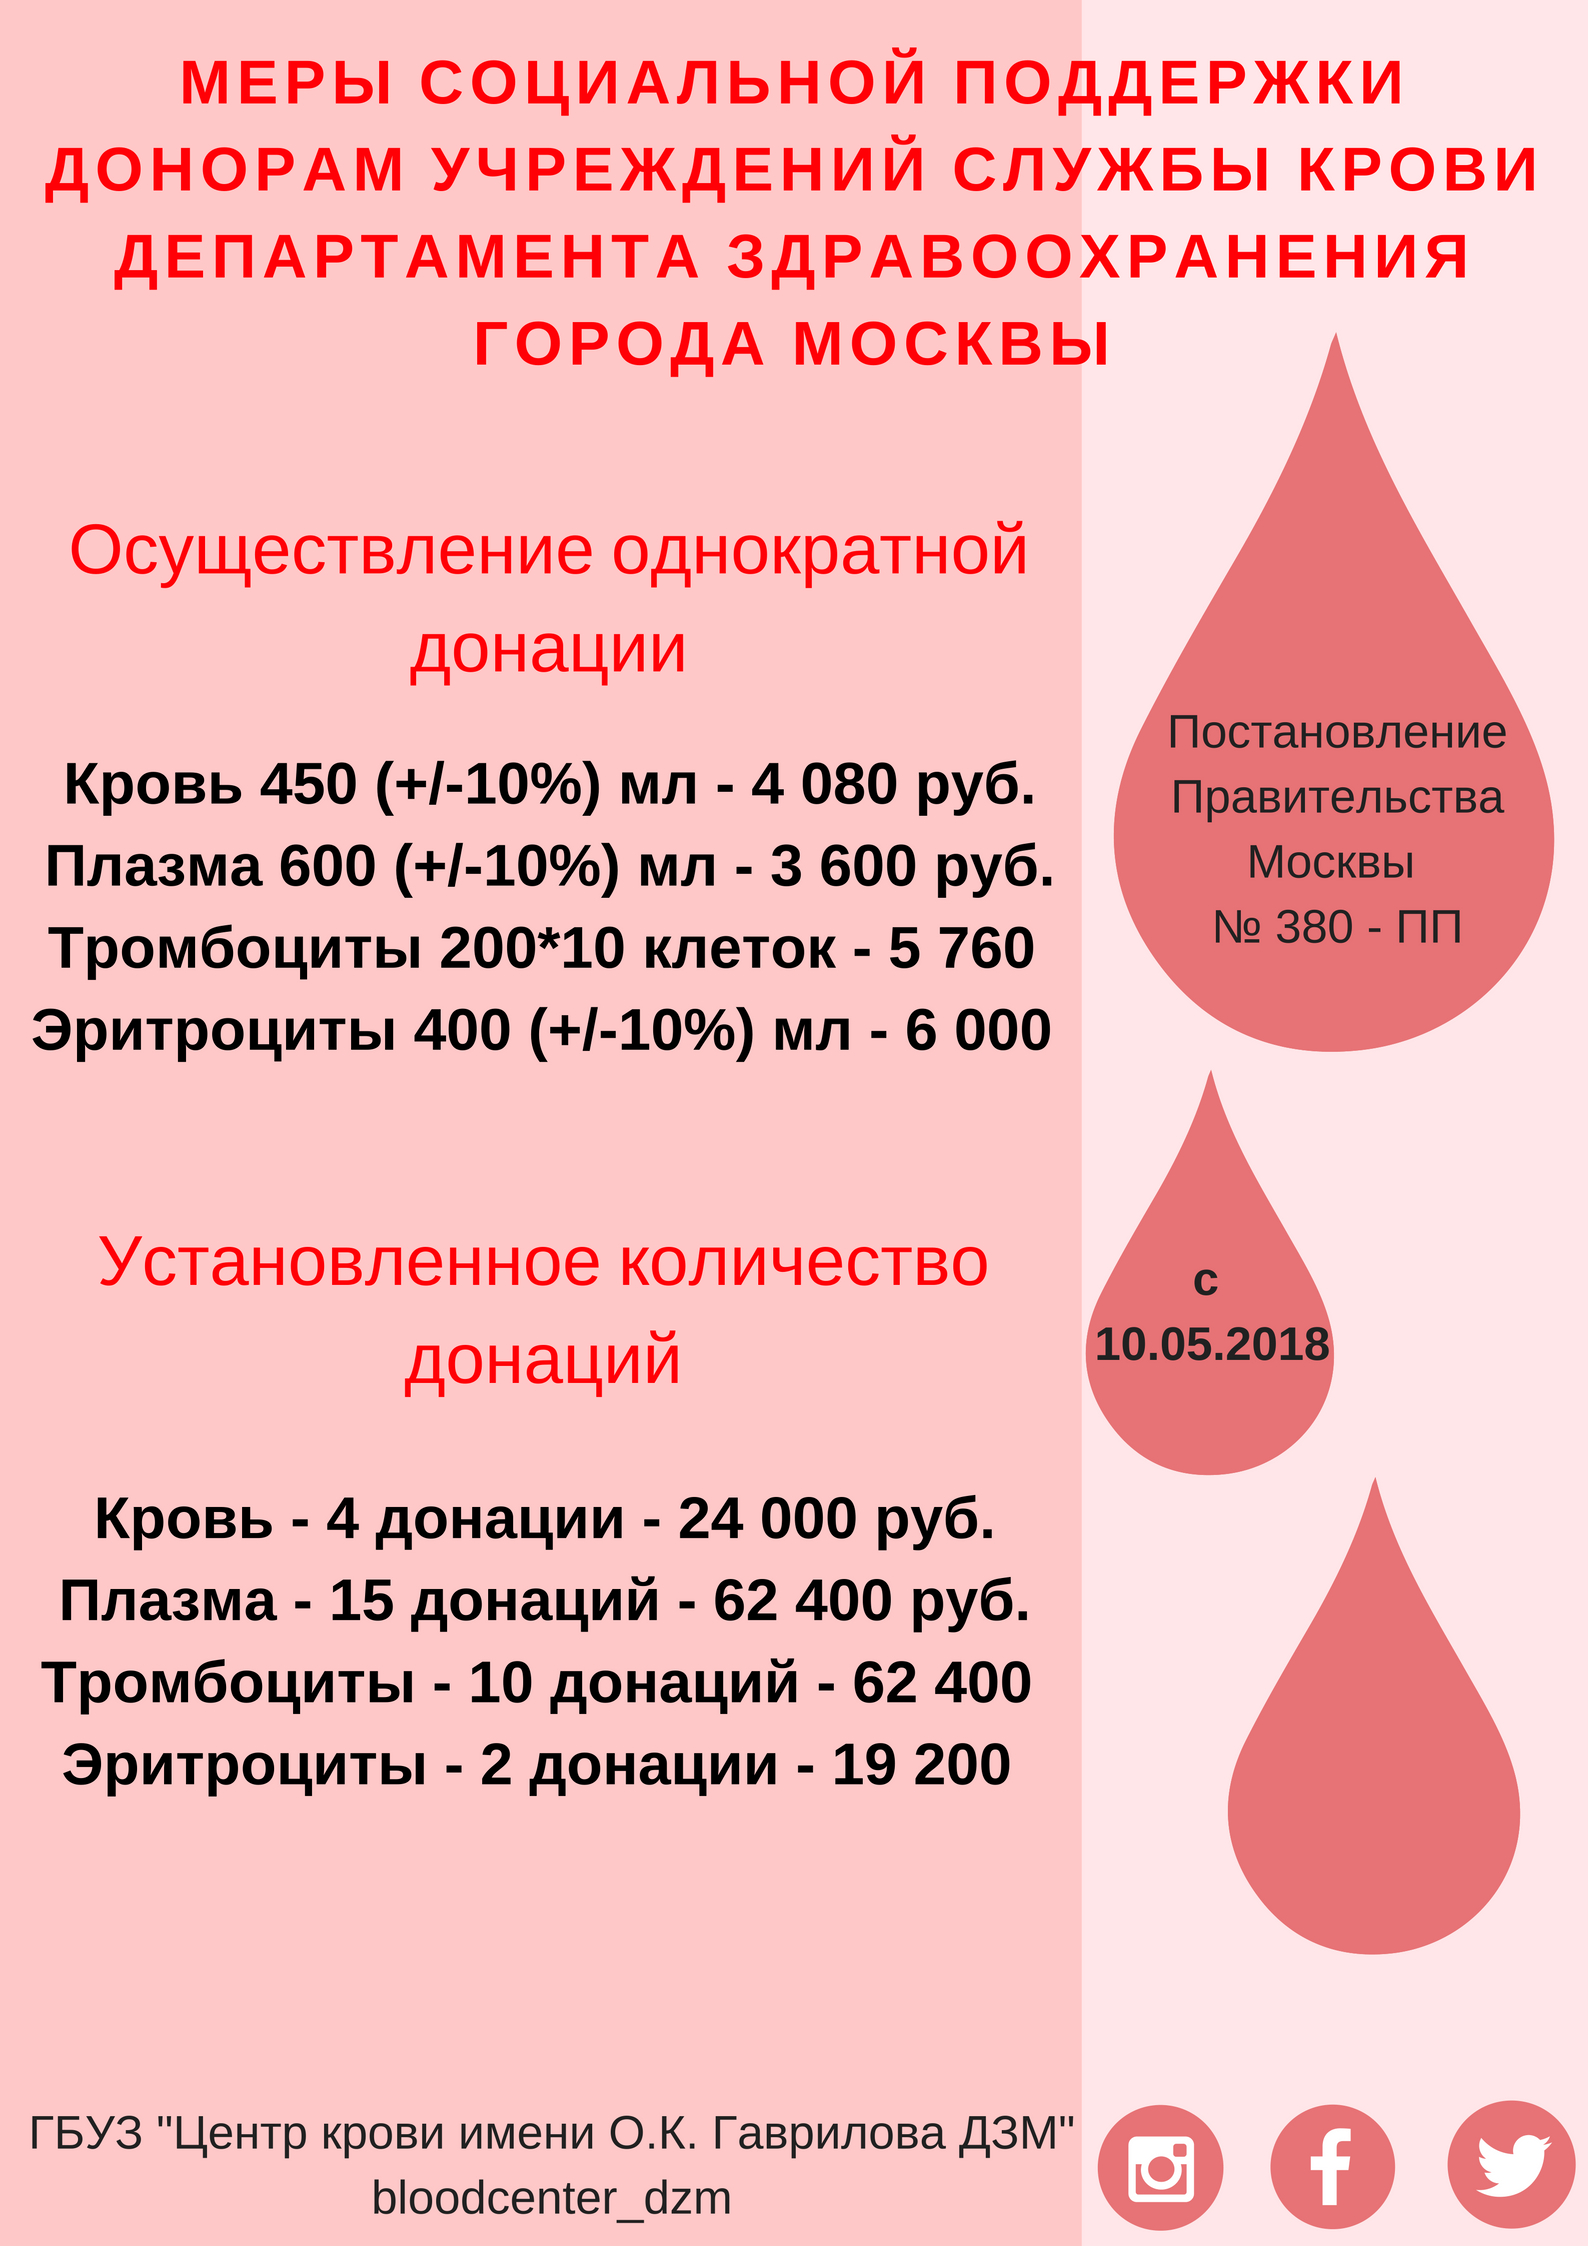 Центр крови сколько. Вознаграждение за донорство крови. Плата донорам за сдачу крови. Сколько платят донорам крови. Почётный донор Москвы льготы.